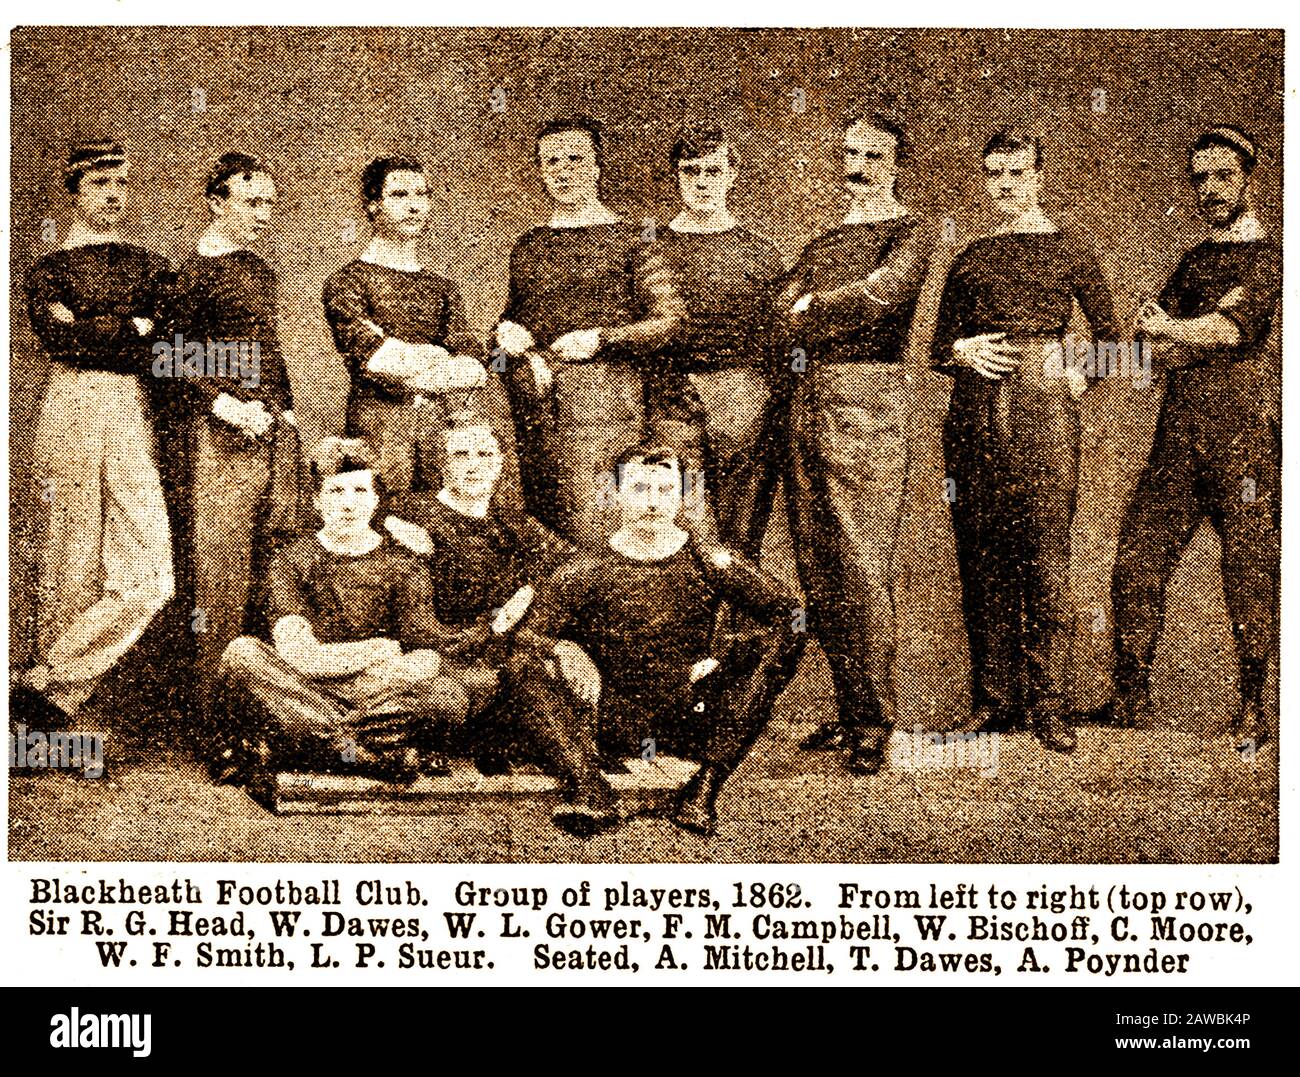 Ein seltenes, frühes Druckbild der Blackheath Rugby Football Club Mannschaft (LondUK) im Jahr 1862 mit Spielernamen. Sir R G Head, W Dawes, W L Gower, F M Campbell, W Bischoff, C Moore, W F Smith, L P Sueur, A Mitchell, T Dawes & A Poynder. Der Verein existiert noch und trägt den Titel, der drittälteste Rugbyverein zu sein, der ununterbrochen auf der Welt existiert. Der Verein wurde im Jahr 1858 von alten Jungen der Blackheath Proprietary School gegründet, die ein von der Rugby School populär gemacht "tragend"-Spiel des Fußballs spielten. Der Verein, dem jeder beitreten konnte, war ein Mitglied des Fußballverbands . Stockfoto